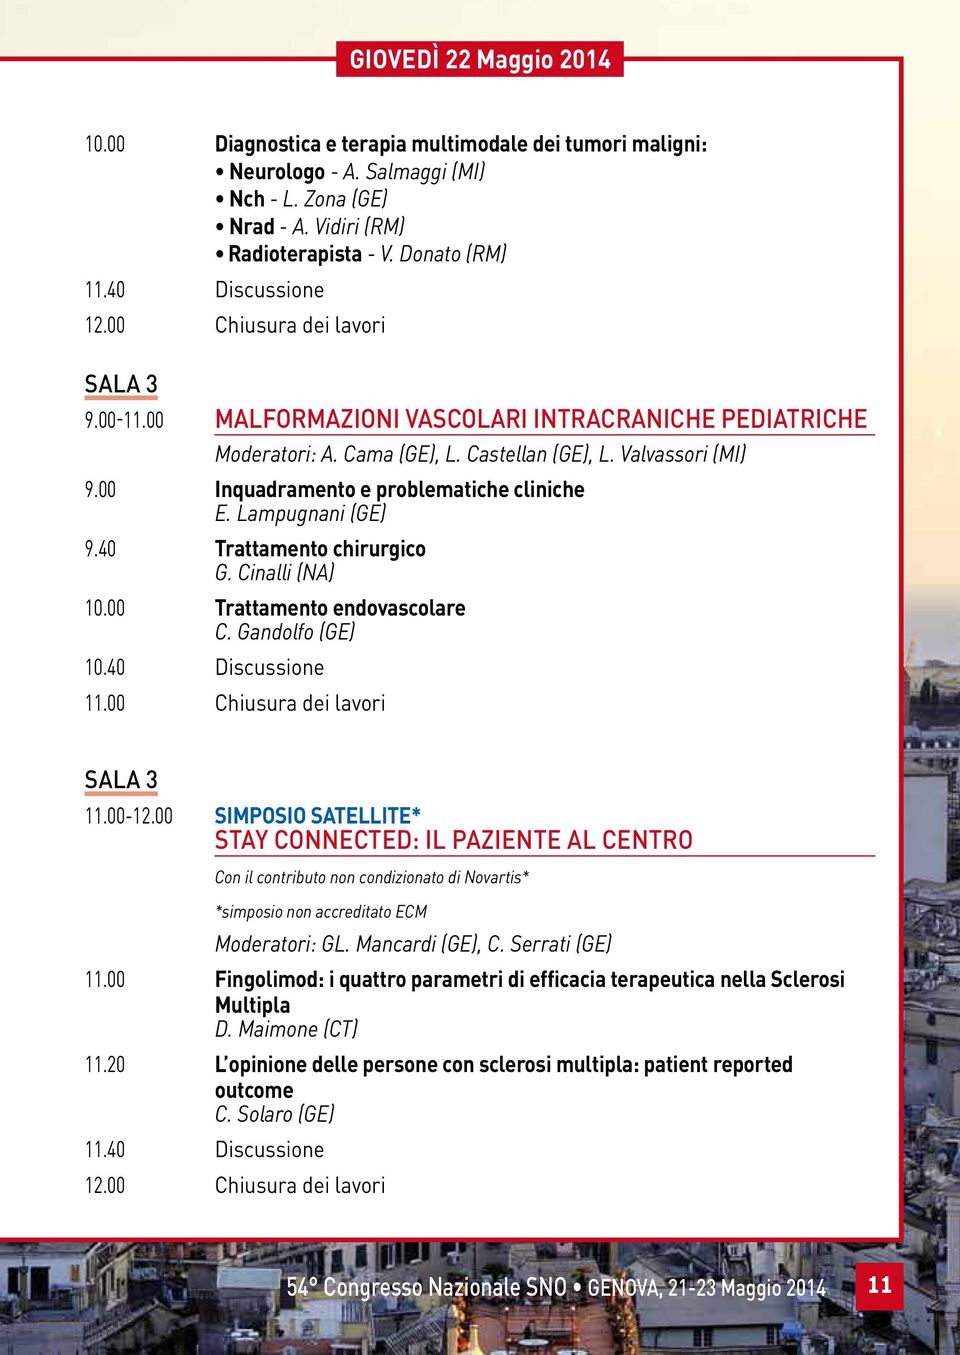 00 Inquadramento e problematiche cliniche E. Lampugnani (GE) 9.40 Trattamento chirurgico G. Cinalli (NA) 10.00 Trattamento endovascolare C. Gandolfo (GE) 10.40 Discussione 11.